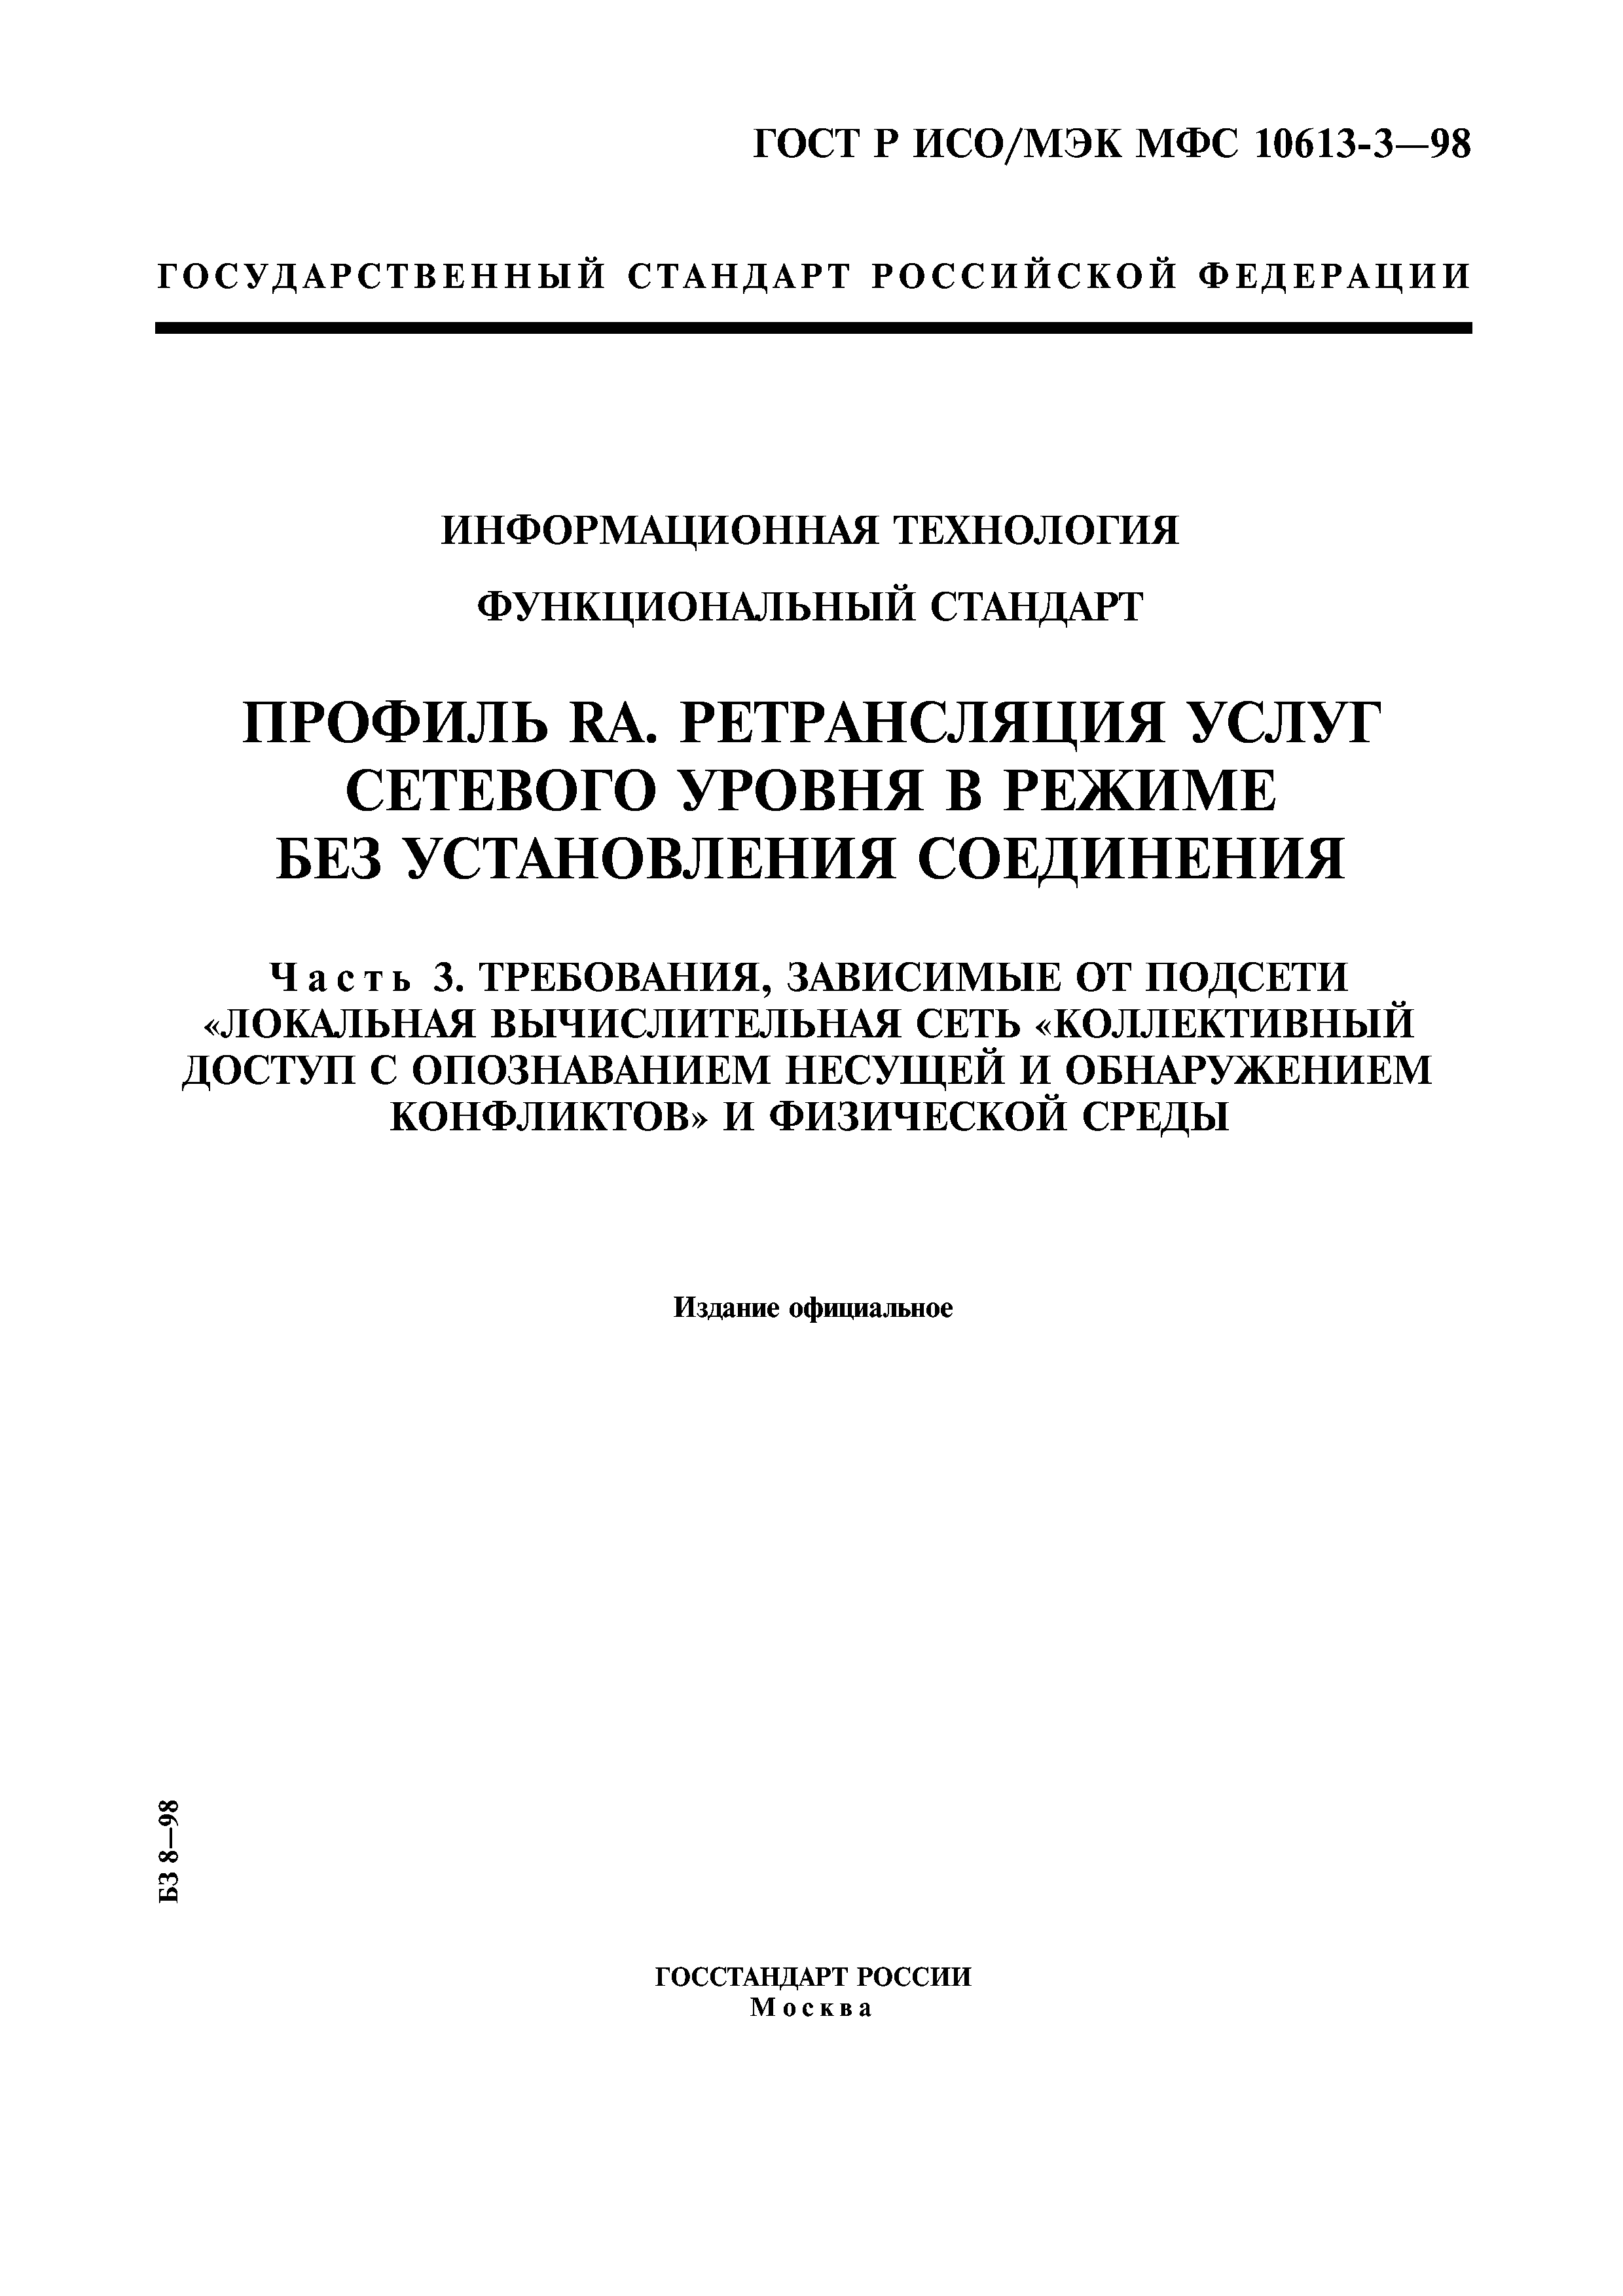 ГОСТ Р ИСО/МЭК МФС 10613-3-98